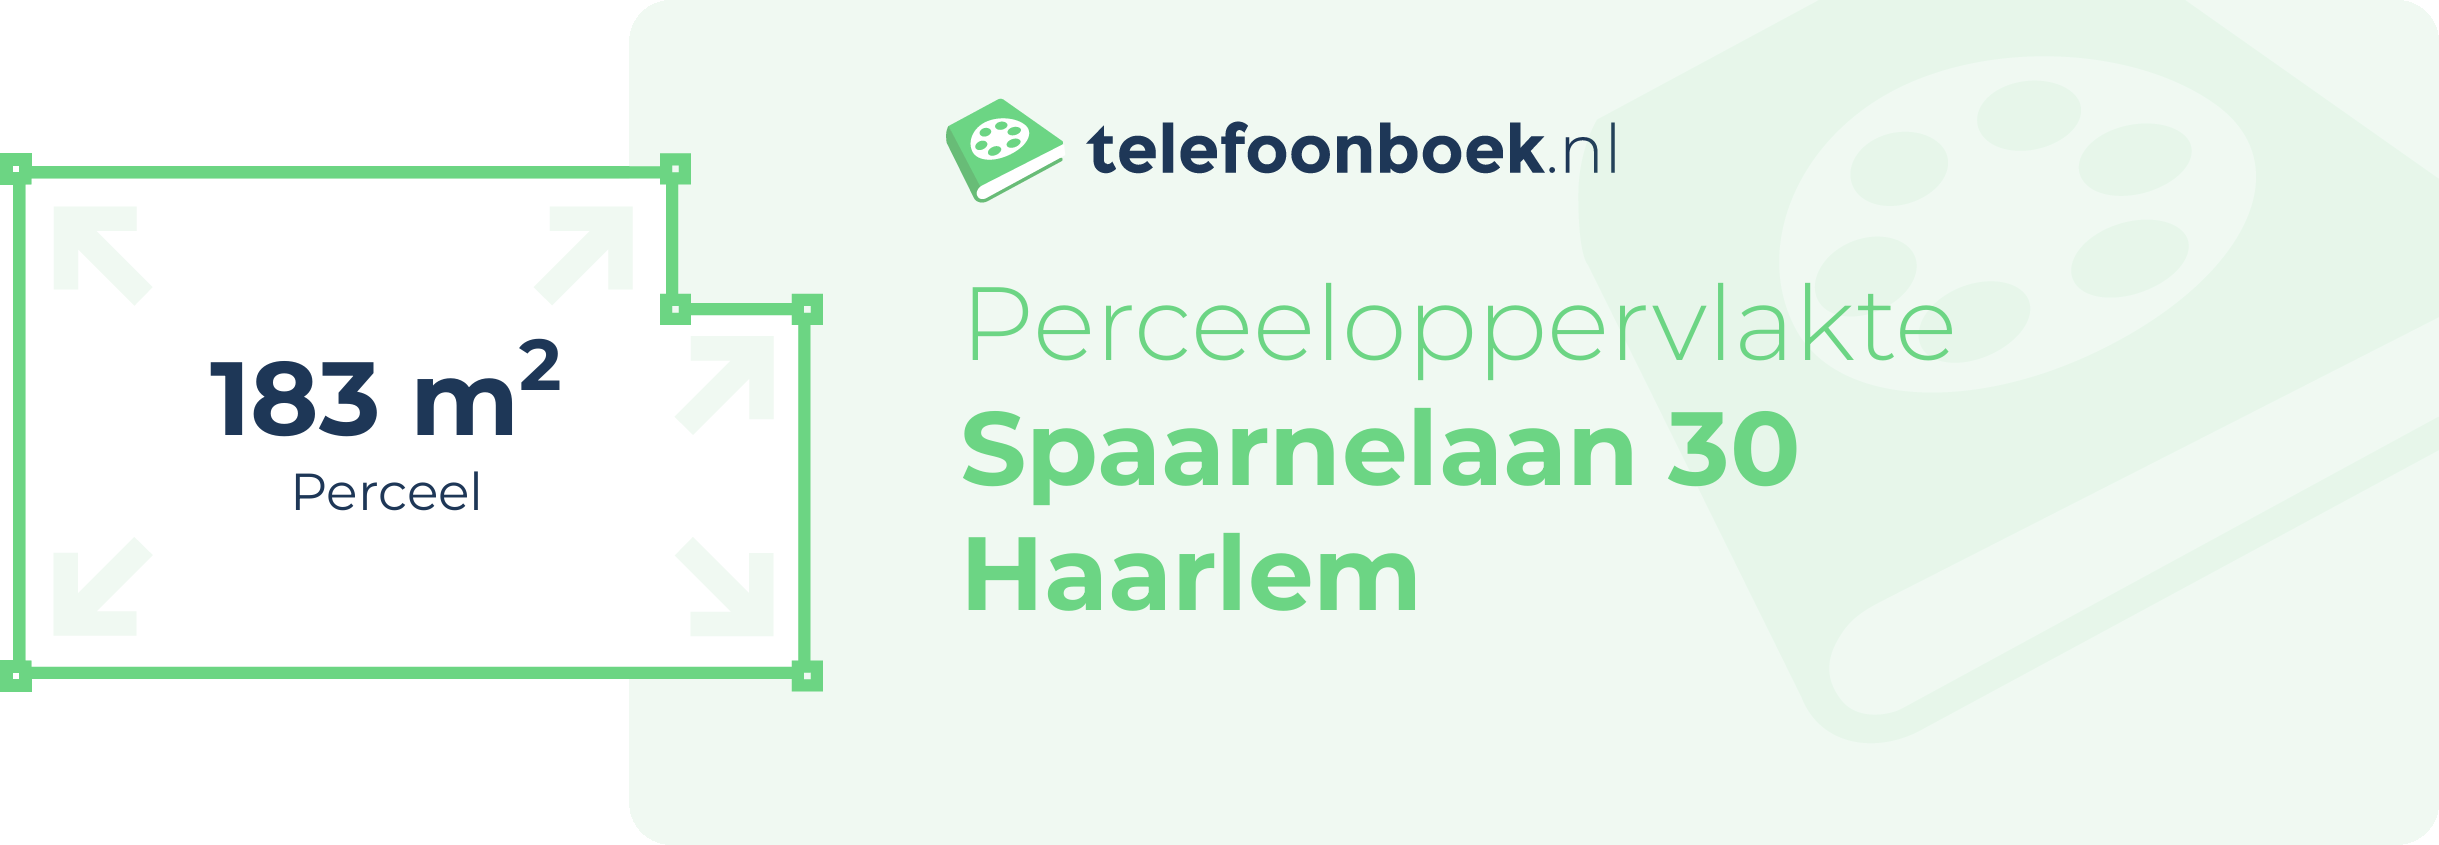 Perceeloppervlakte Spaarnelaan 30 Haarlem